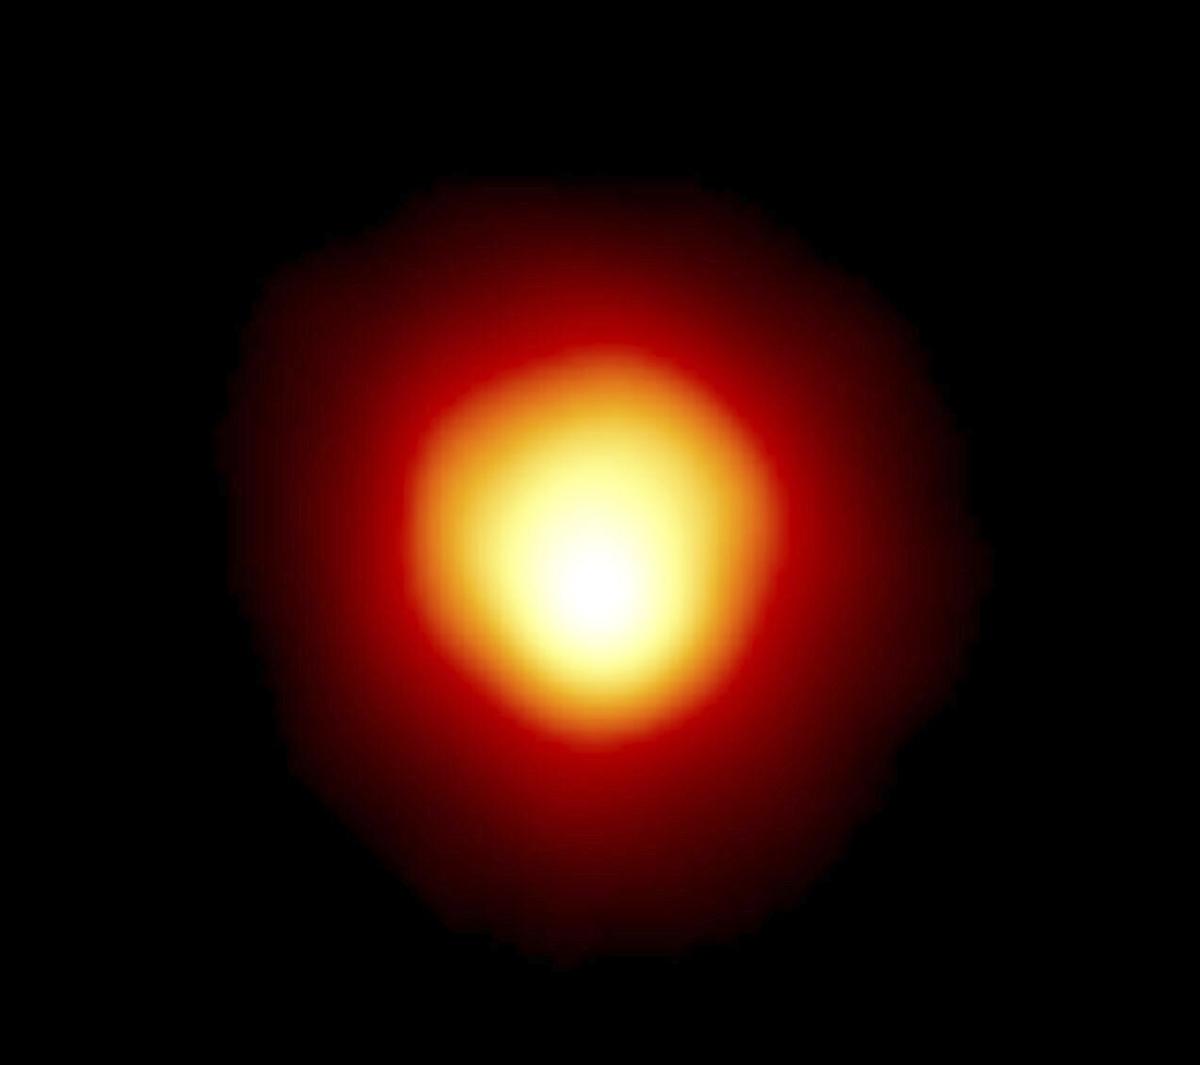 Tiểu hành tinh Leona đi qua phía trước ngôi sao Betelgeuse tạo ra hiện tượng nhật thực hiếm gặp mà hàng triệu người có thể nhìn thấy